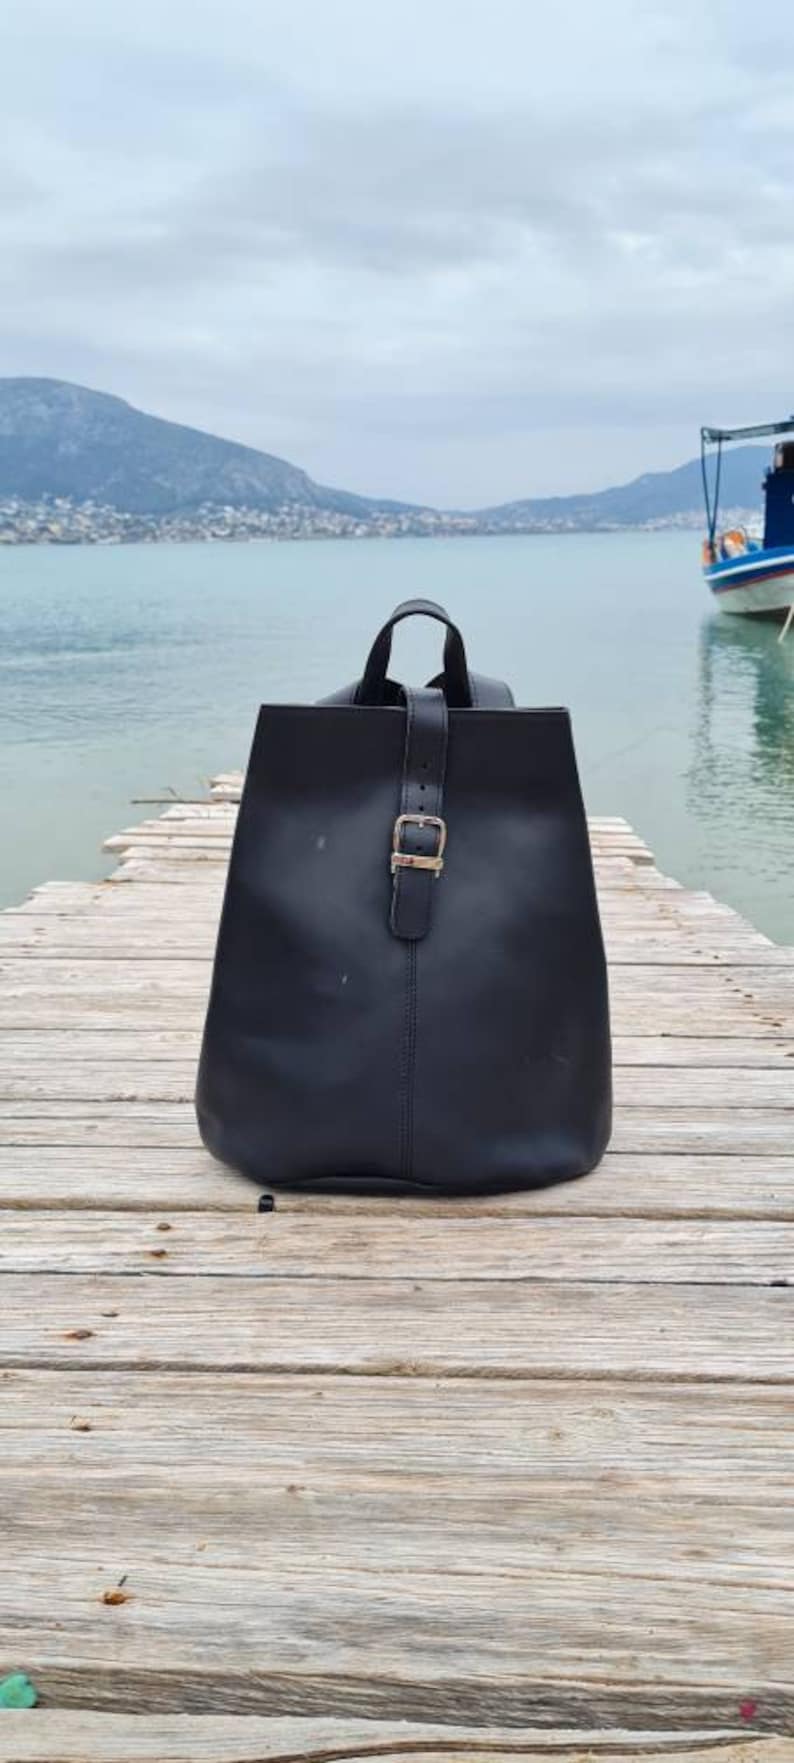 Leather Backpack, Black Leather Backpack, Travel Backpack, School Bag, Women Bag, Men Bag, Student Backpack, Magnetic closure, Shoulder Bag image 2